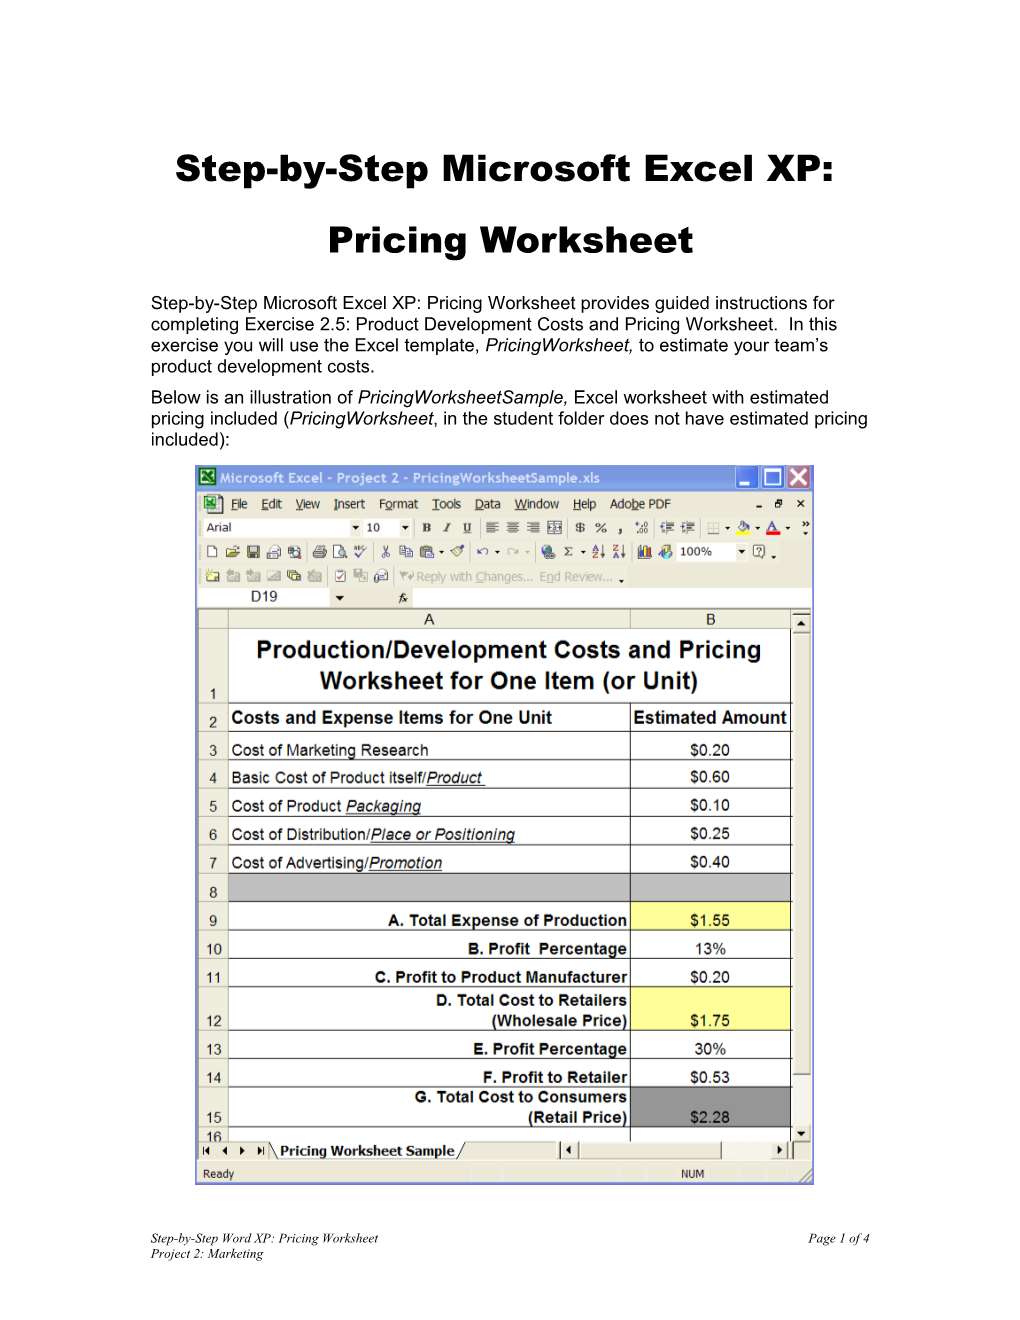 Step-By-Step Microsoft Excelxp